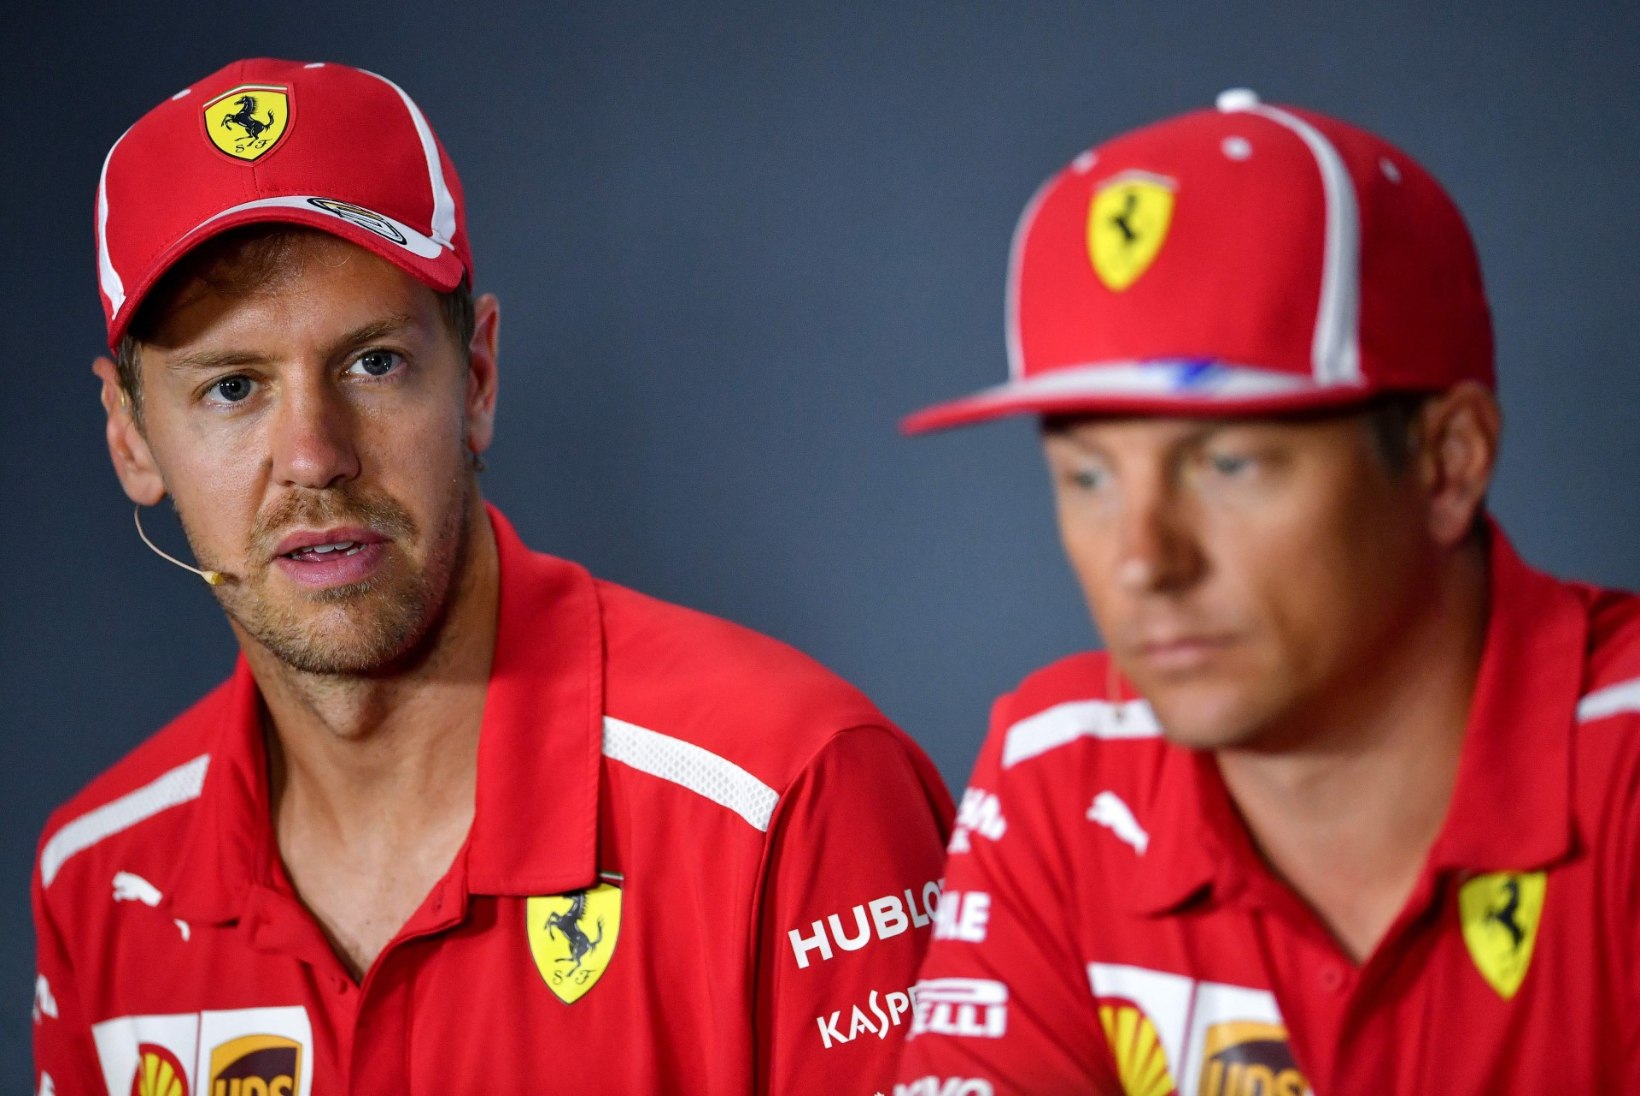 Sebastian Vettel rammis sõuüritusel seina, sest kasutas Räikköneni vormelit